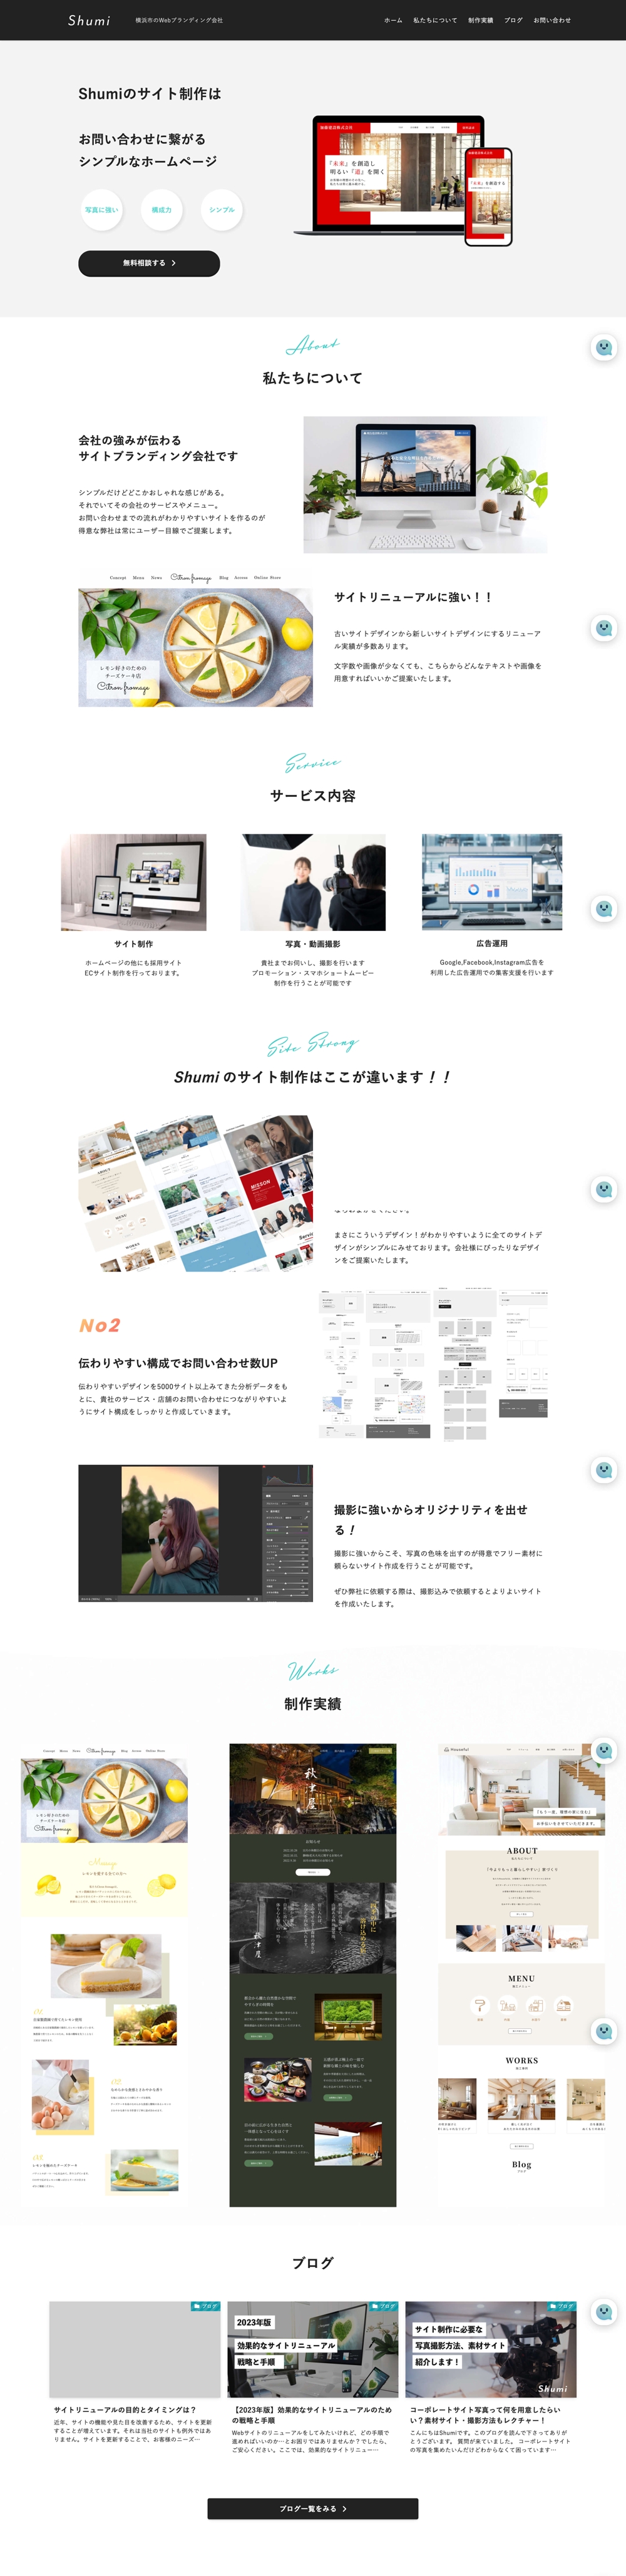 Shumiデザインのホームページです